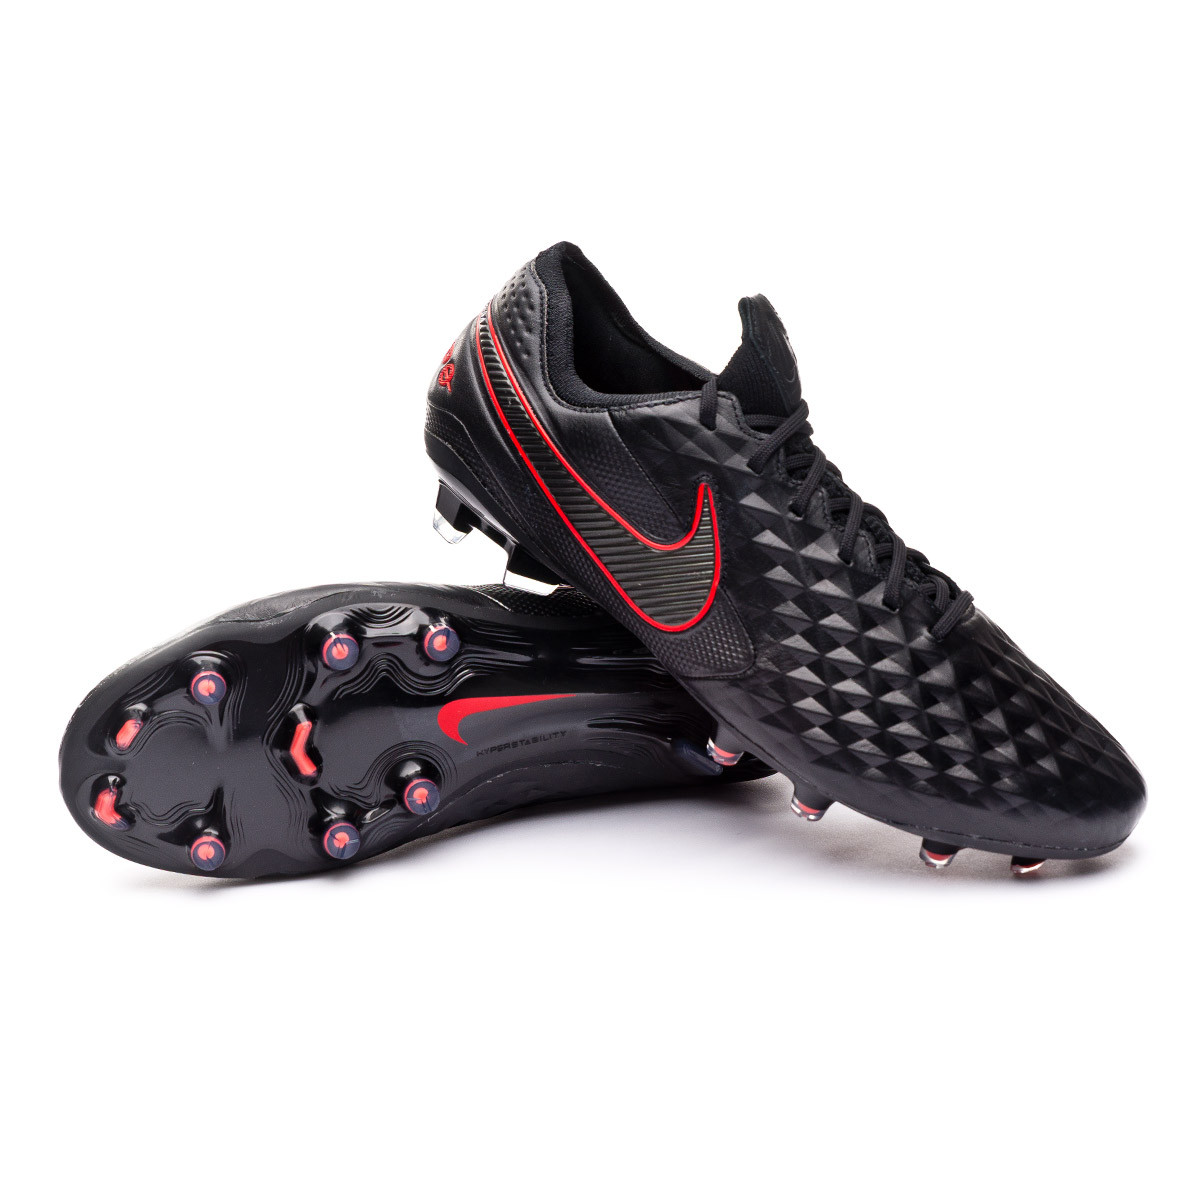 Bota de fútbol Nike Tiempo Legend VIII Elite FG Black-Dark smoke grey-Chile  red - Tienda de fútbol Fútbol Emotion